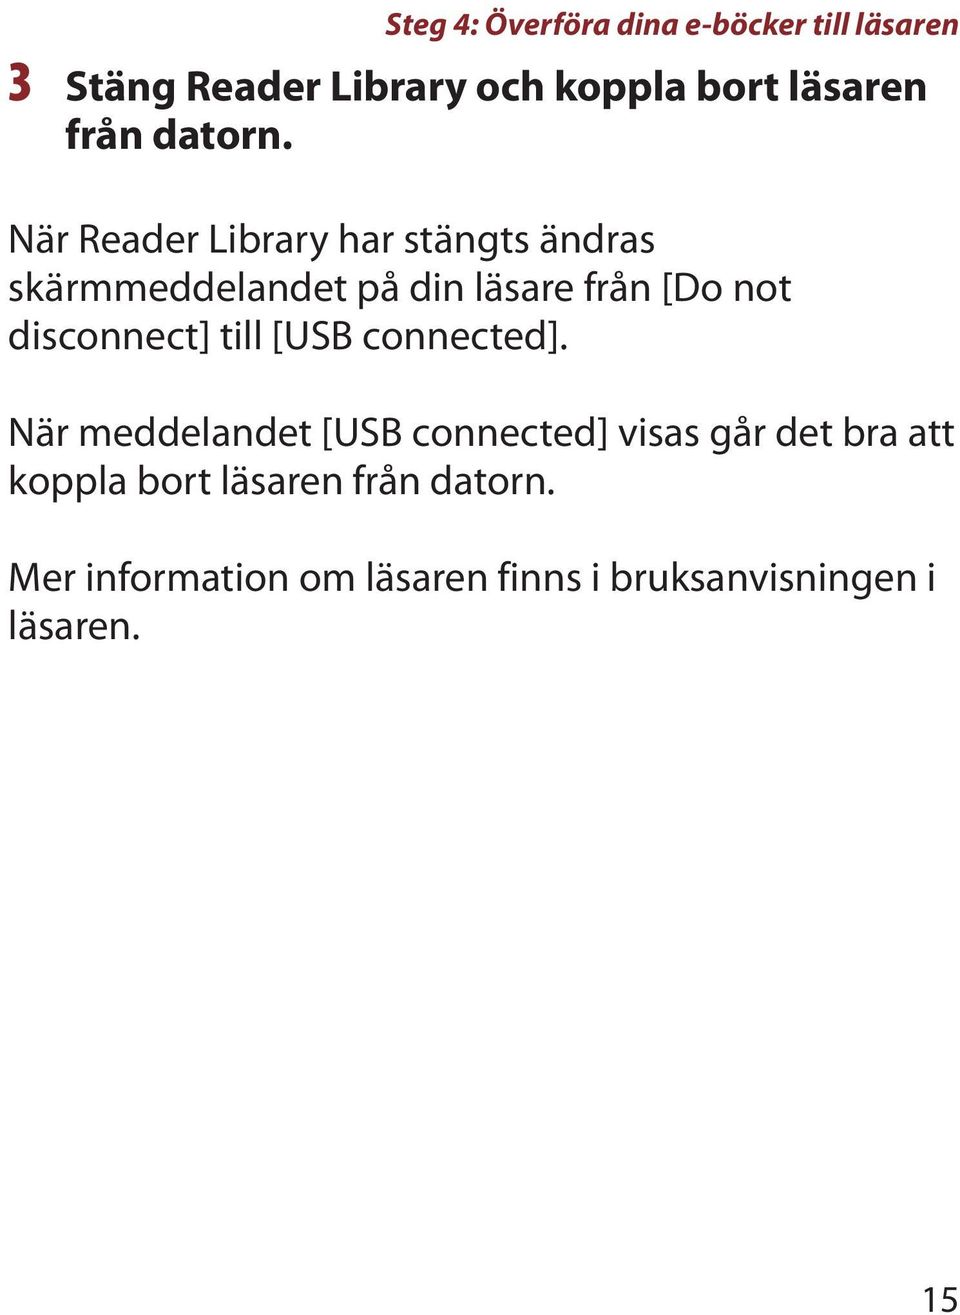 När Reader Library har stängts ändras skärmmeddelandet på din läsare från [Do not